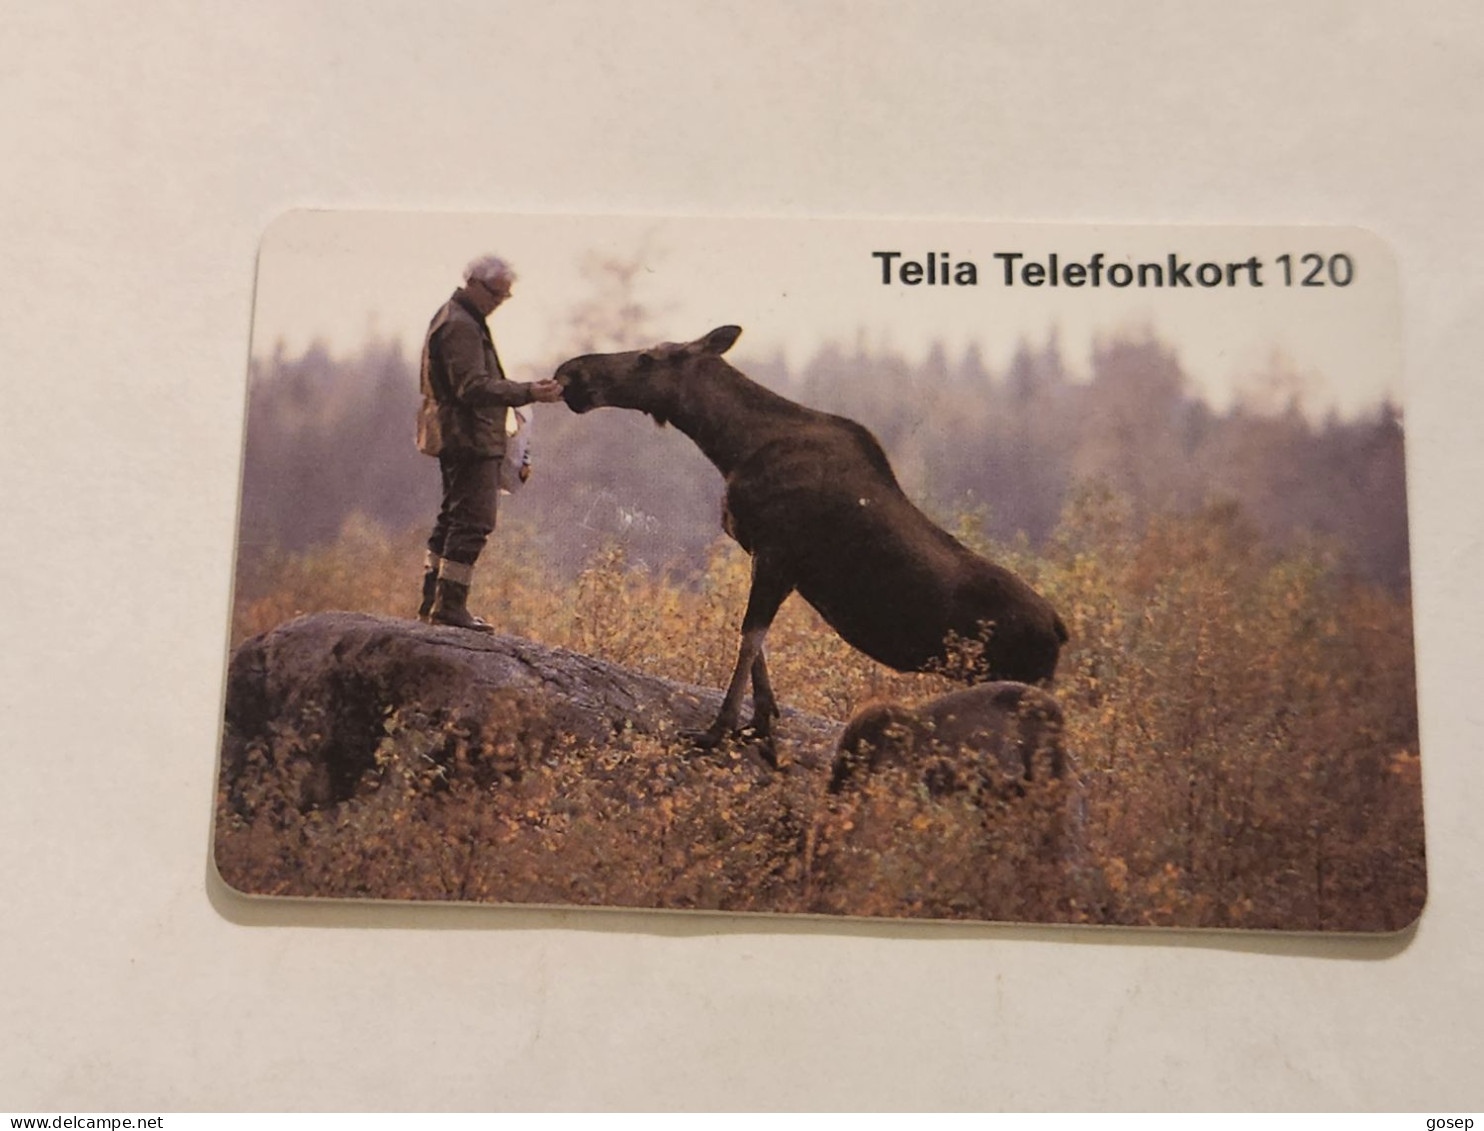 SWEDEN-(SE-TEL-120-0027)-Man Feeding A El-(36)(Telefonkort 120)(tirage-100.000)(003984205)-used Card+1card Prepiad Free - Svezia